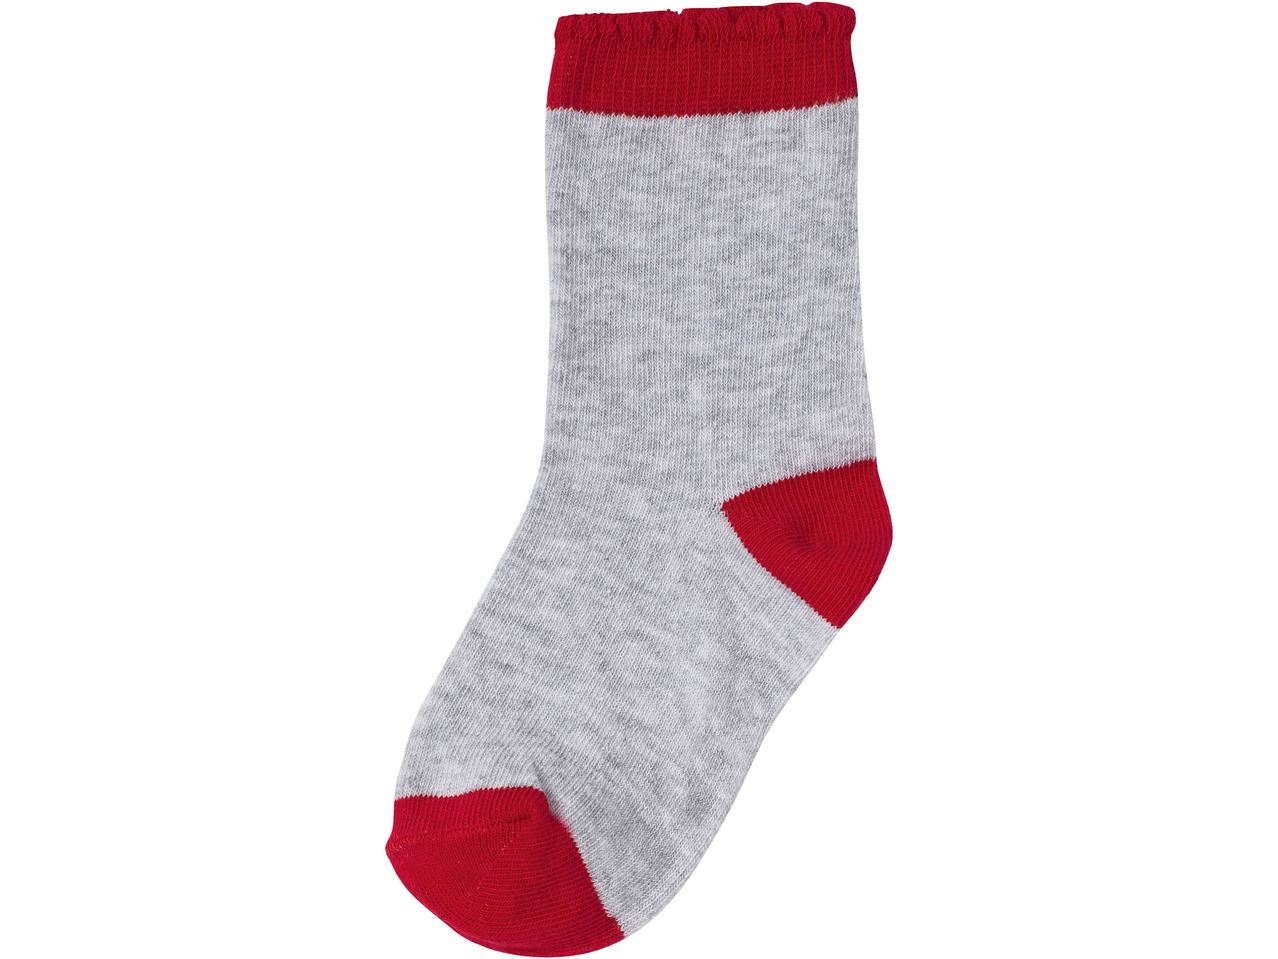 Girls' Socks, 7 pairs